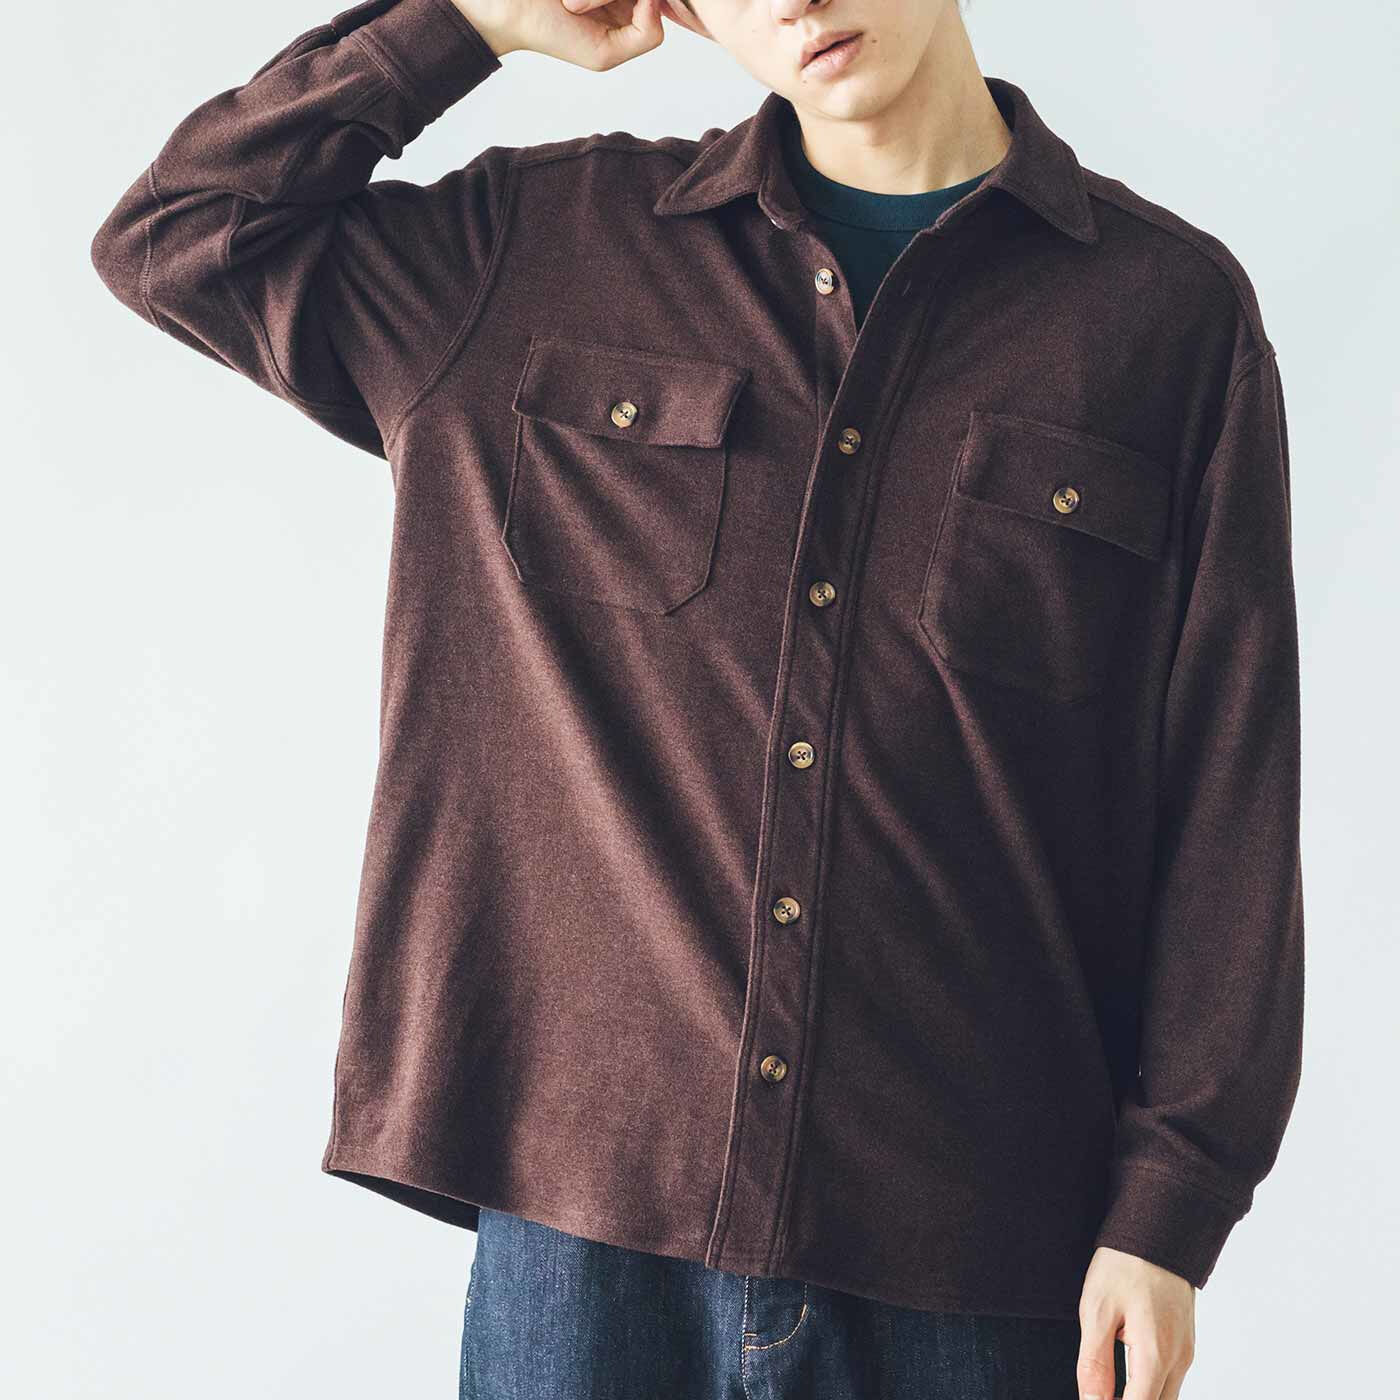 Real Stock|ウールシャツのような風合いの のびのびあったか起毛CPOシャツジャケット〈レトロブラウン〉|身長184cm、3サイズ着用